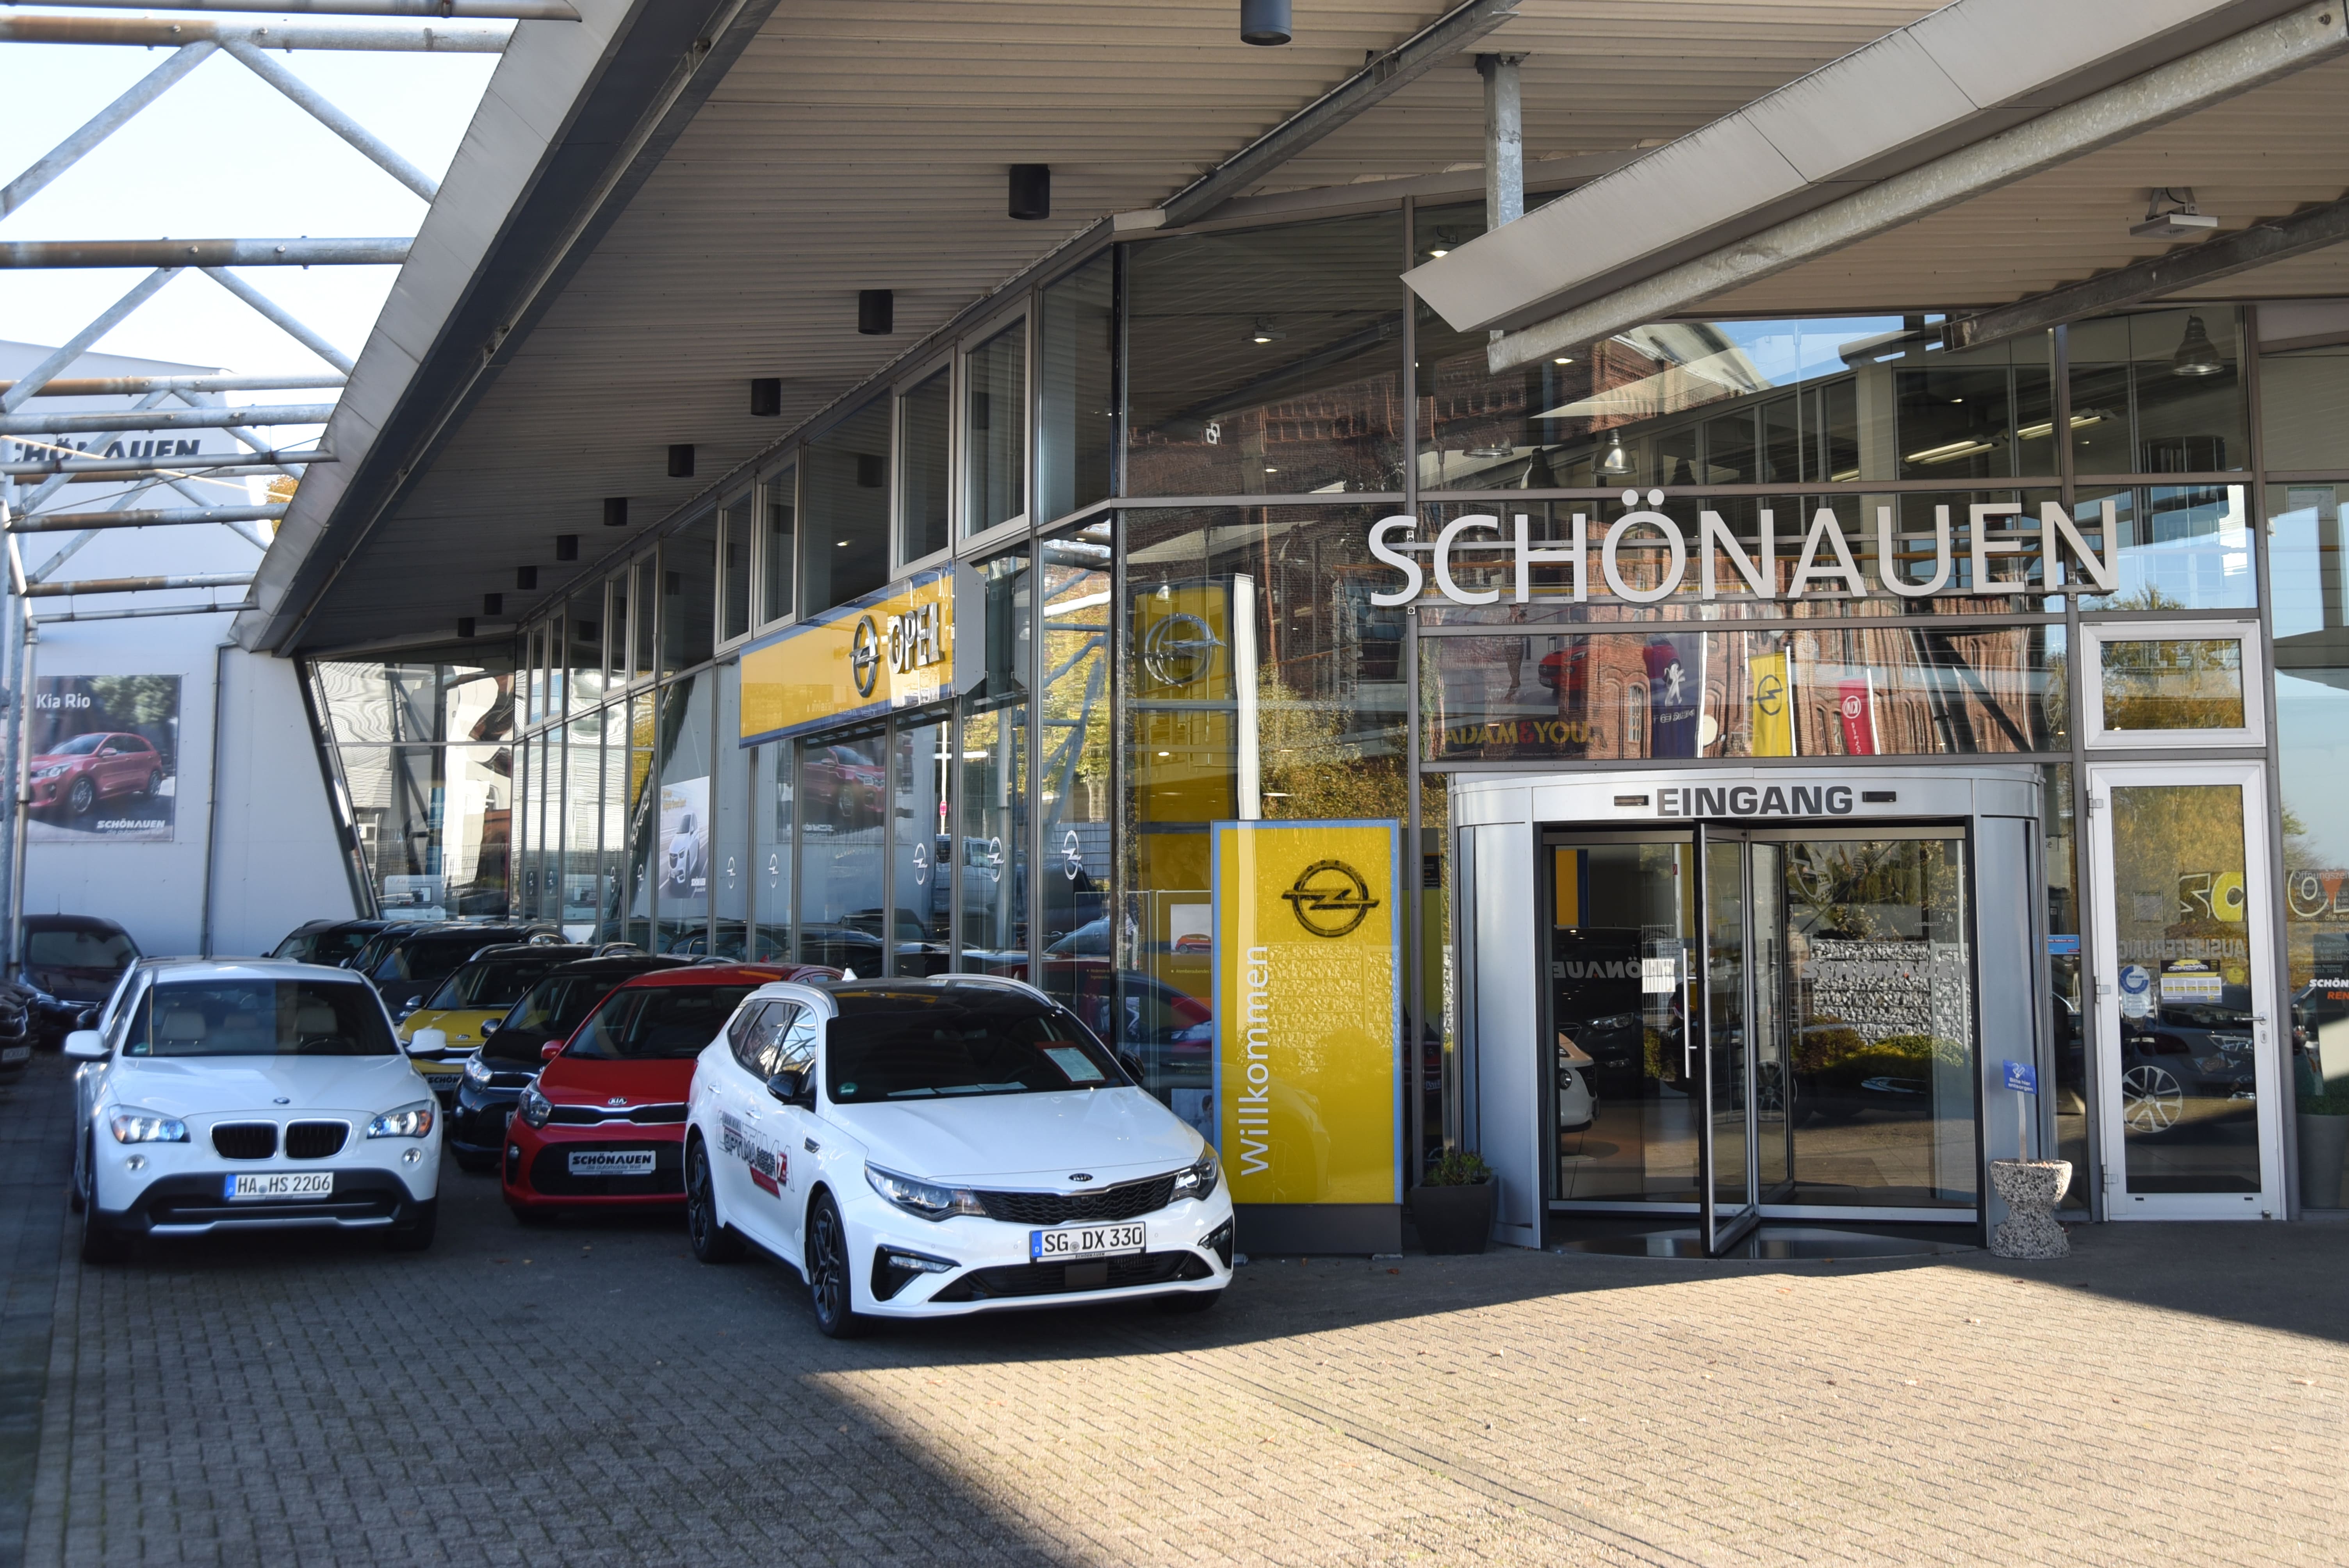 Schönauen Autohaus GmbH & Co. KG, Kottendorfer Str. 2-6 in Solingen